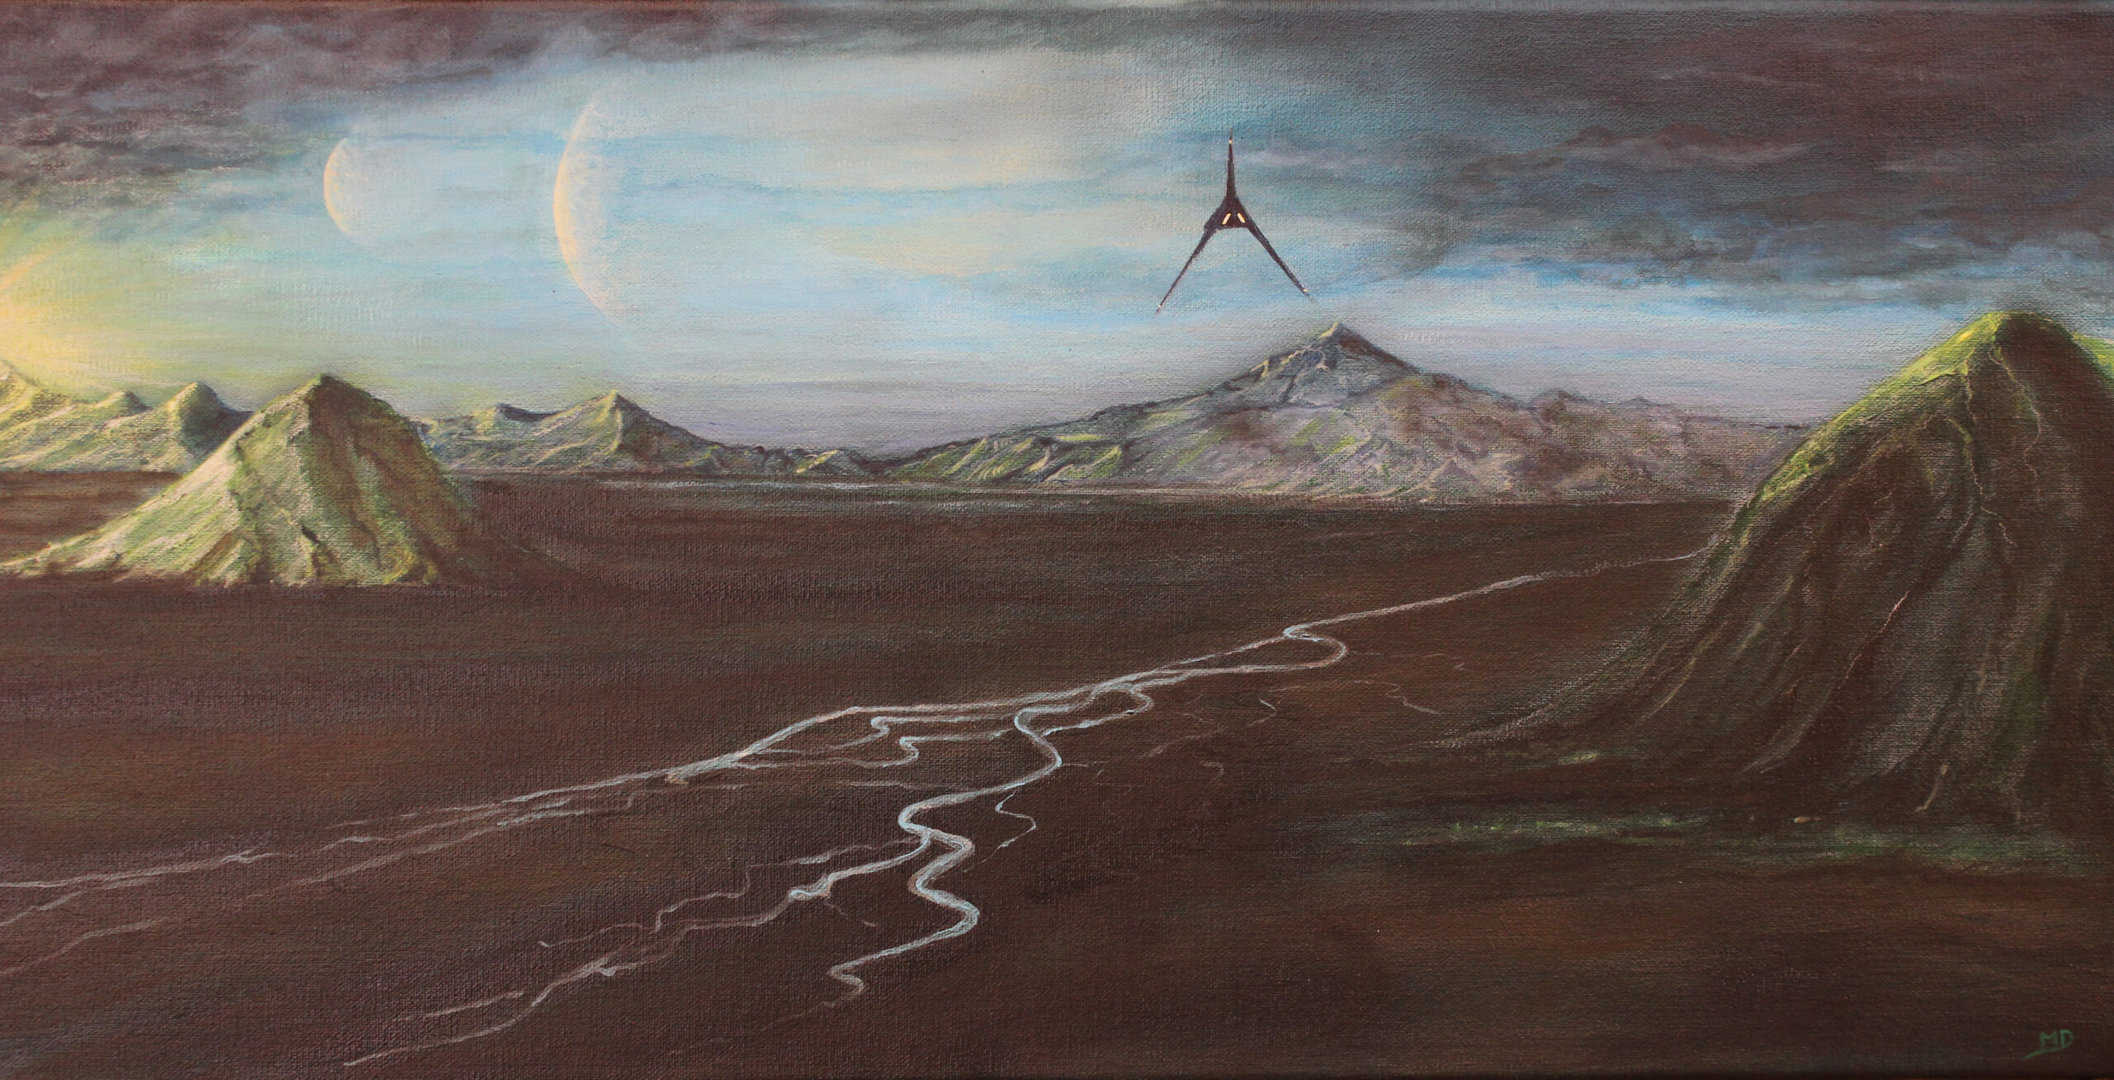 Œuvre d'art, science fiction, acrylique sur toile 30/60cm, david morel artiste, vaisseau de l'empire qui arrive sur une planète agricole avec vue sur les montagnes